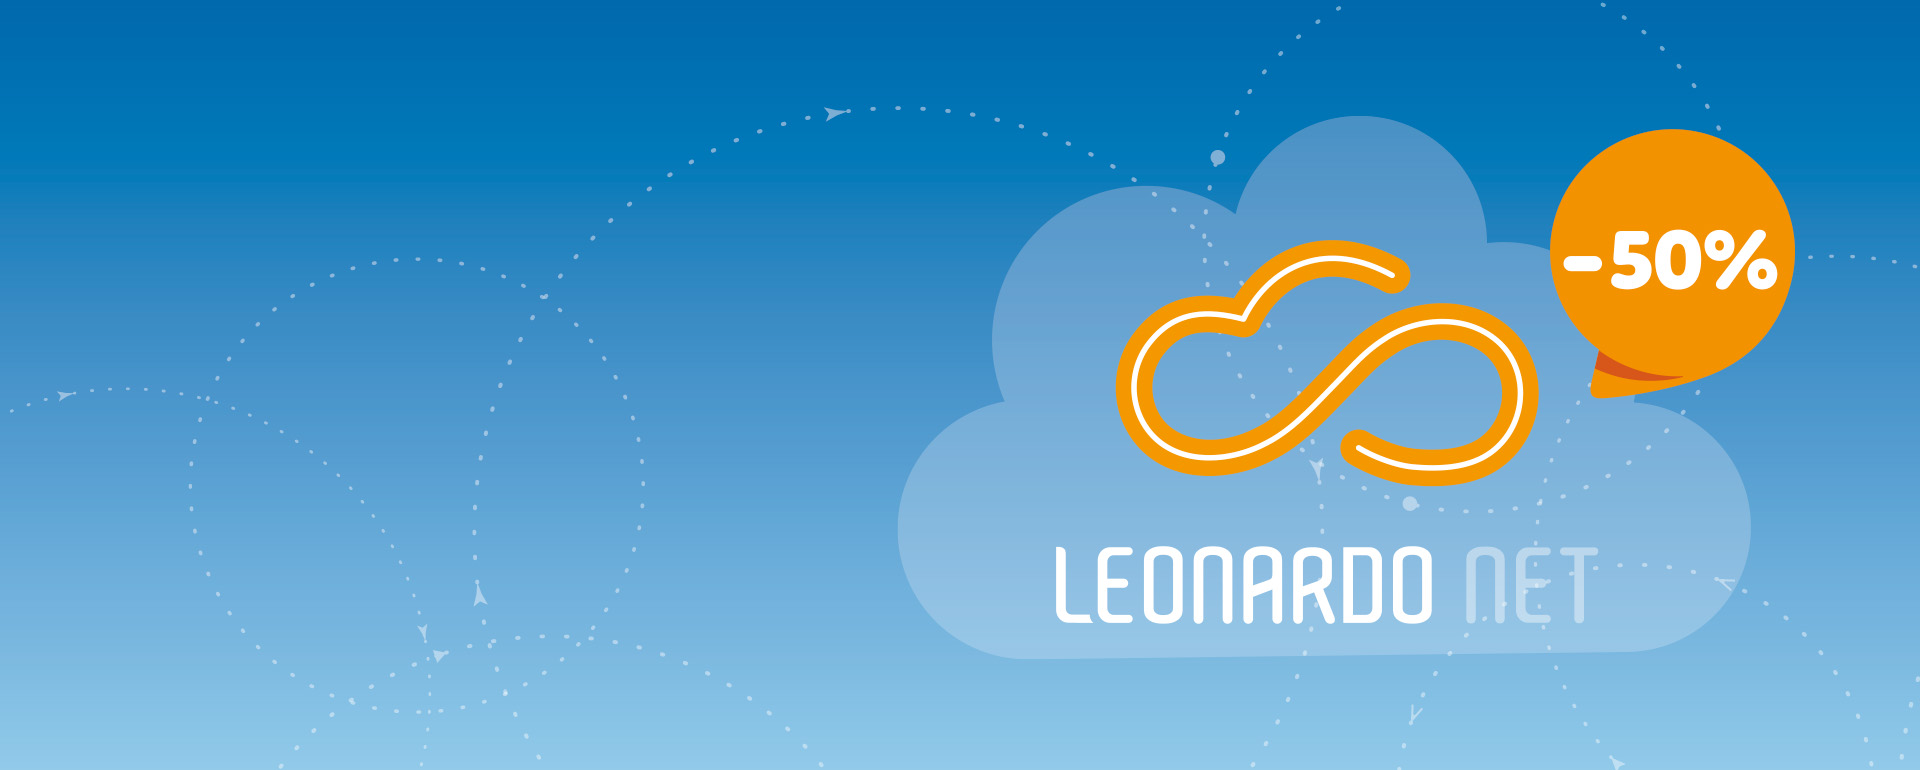 Software Leonardo Net: offerta imperdibile